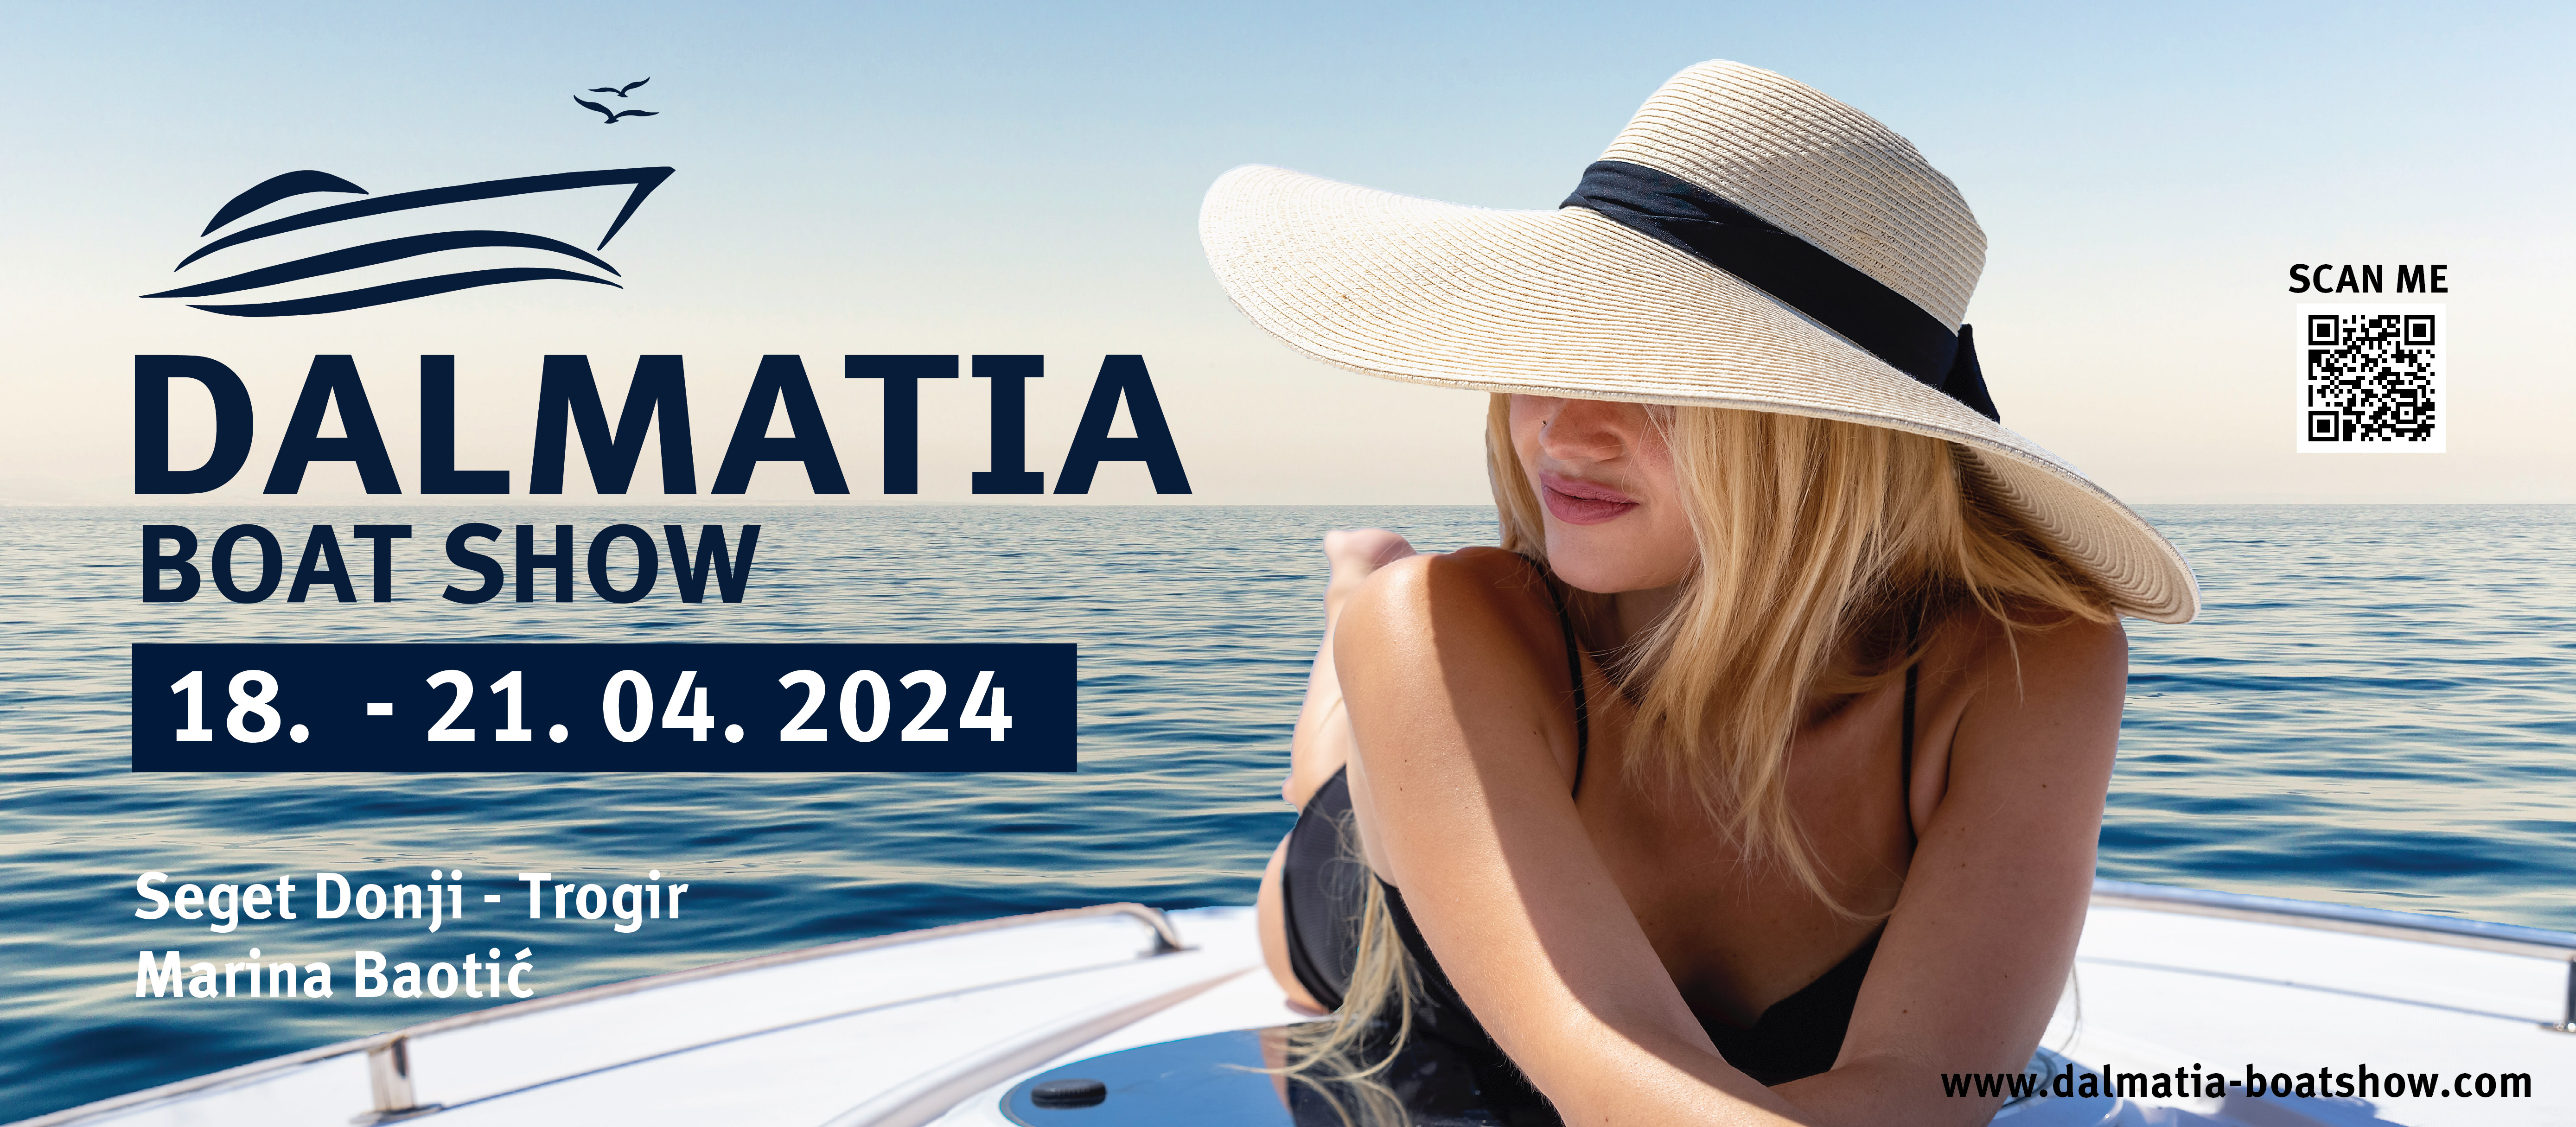 Prvi Dalmatia Boat Show